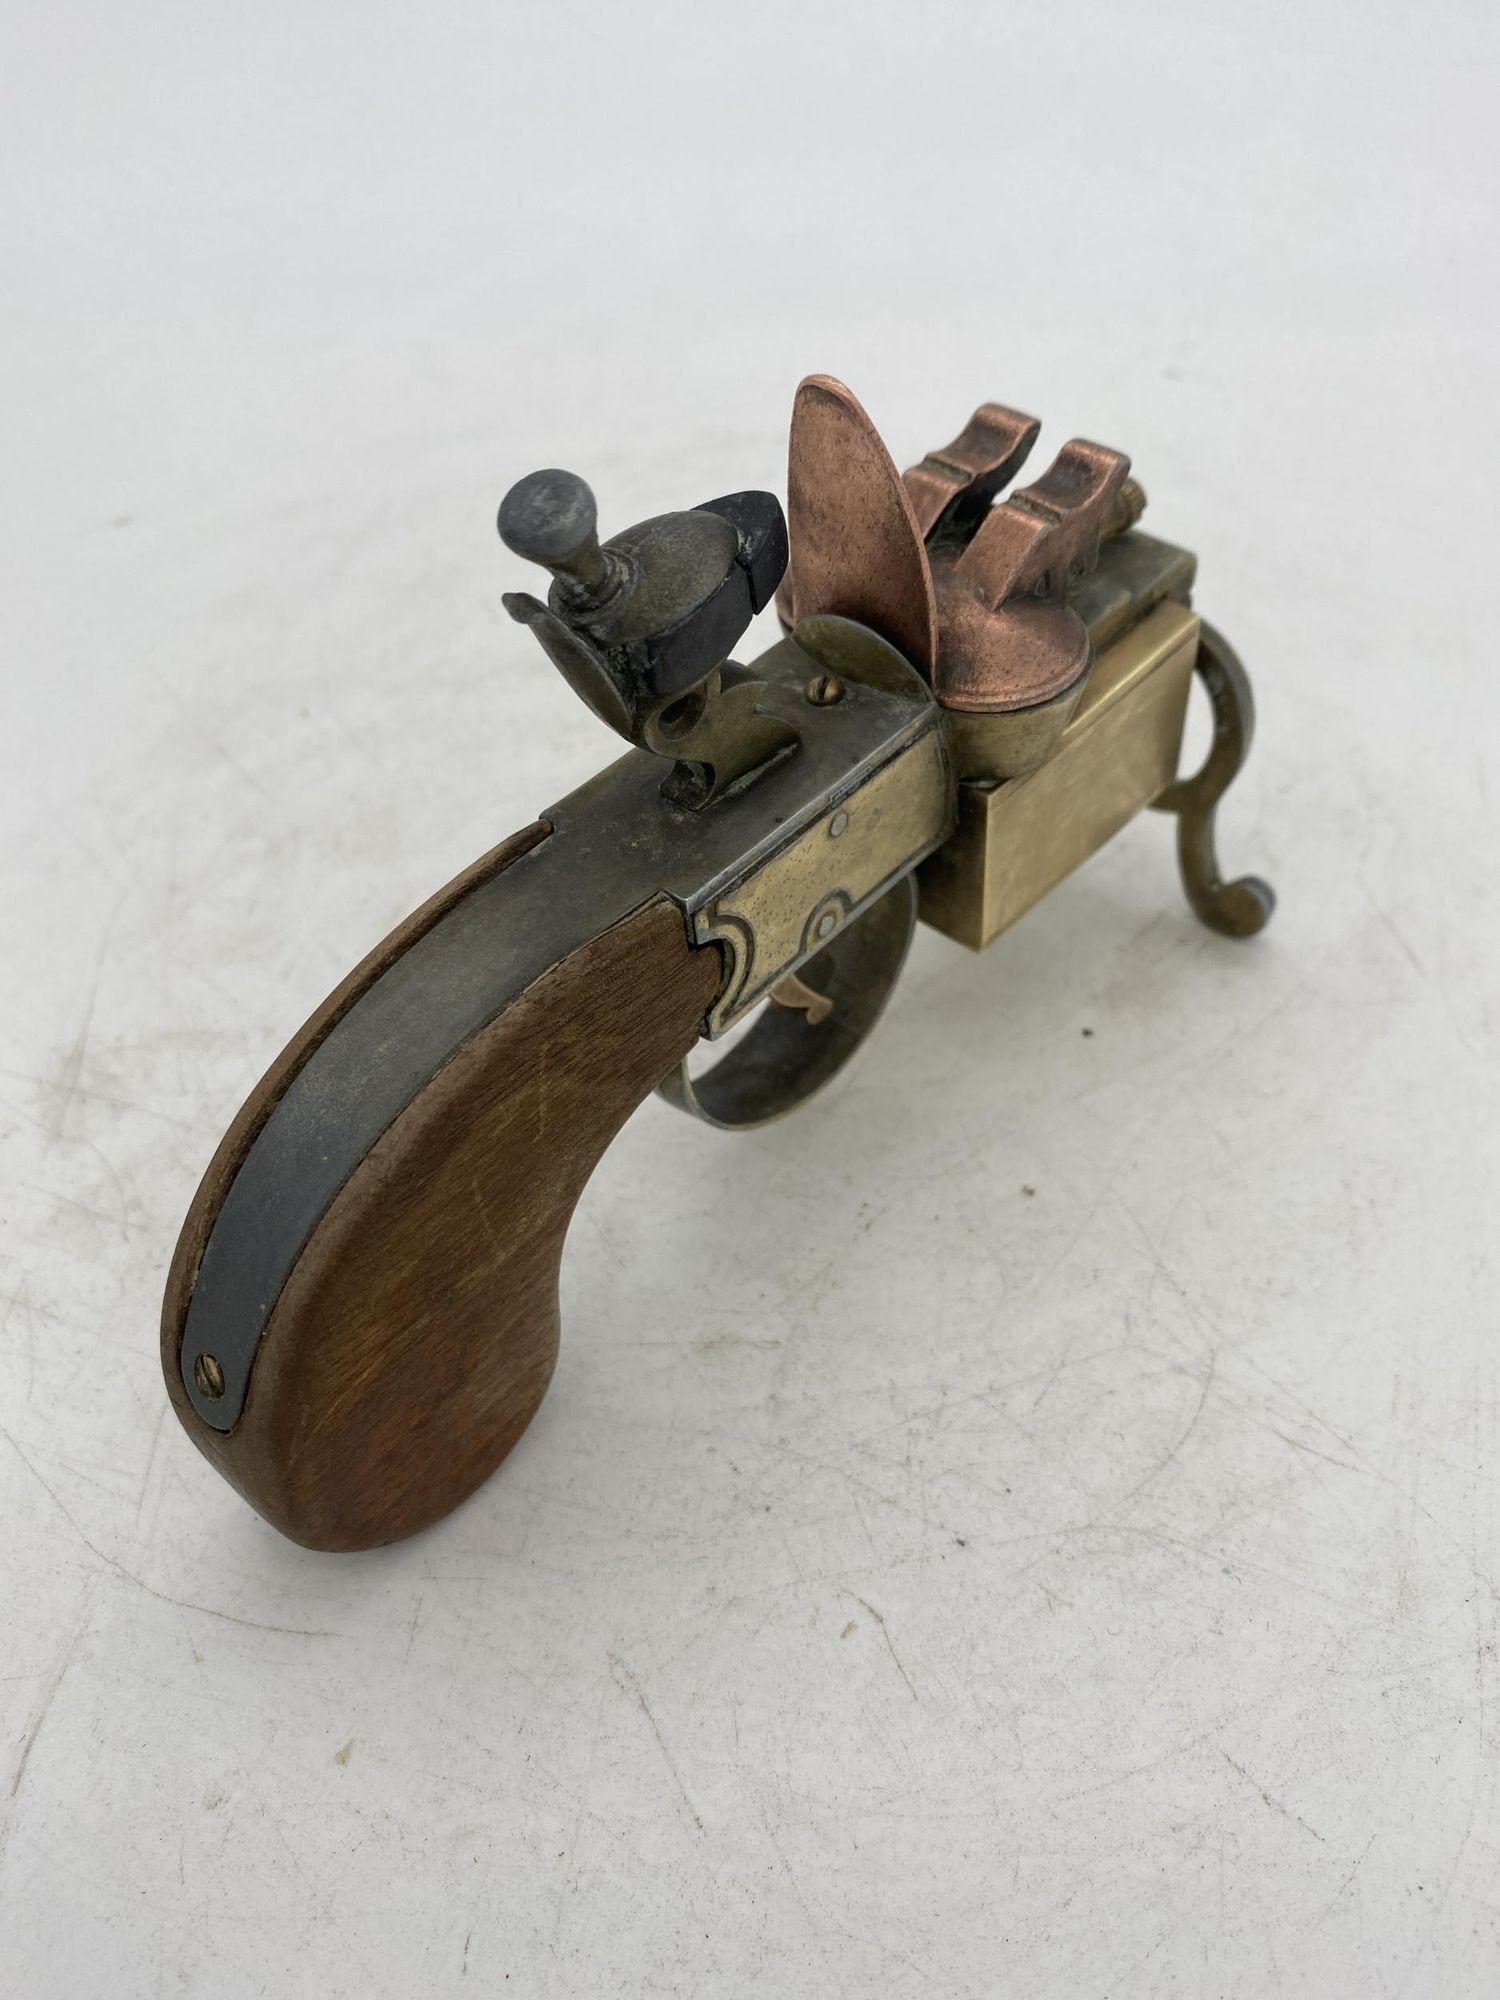 Ce pistolet à amadou de Dunhill est un bel exemple d'un extraordinaire briquet de table qui a la forme d'un pistolet à amadou à silex du XVIIIe siècle.
Il est fabriqué en laiton et a une finition en laiton antique et une belle poignée en dalle de